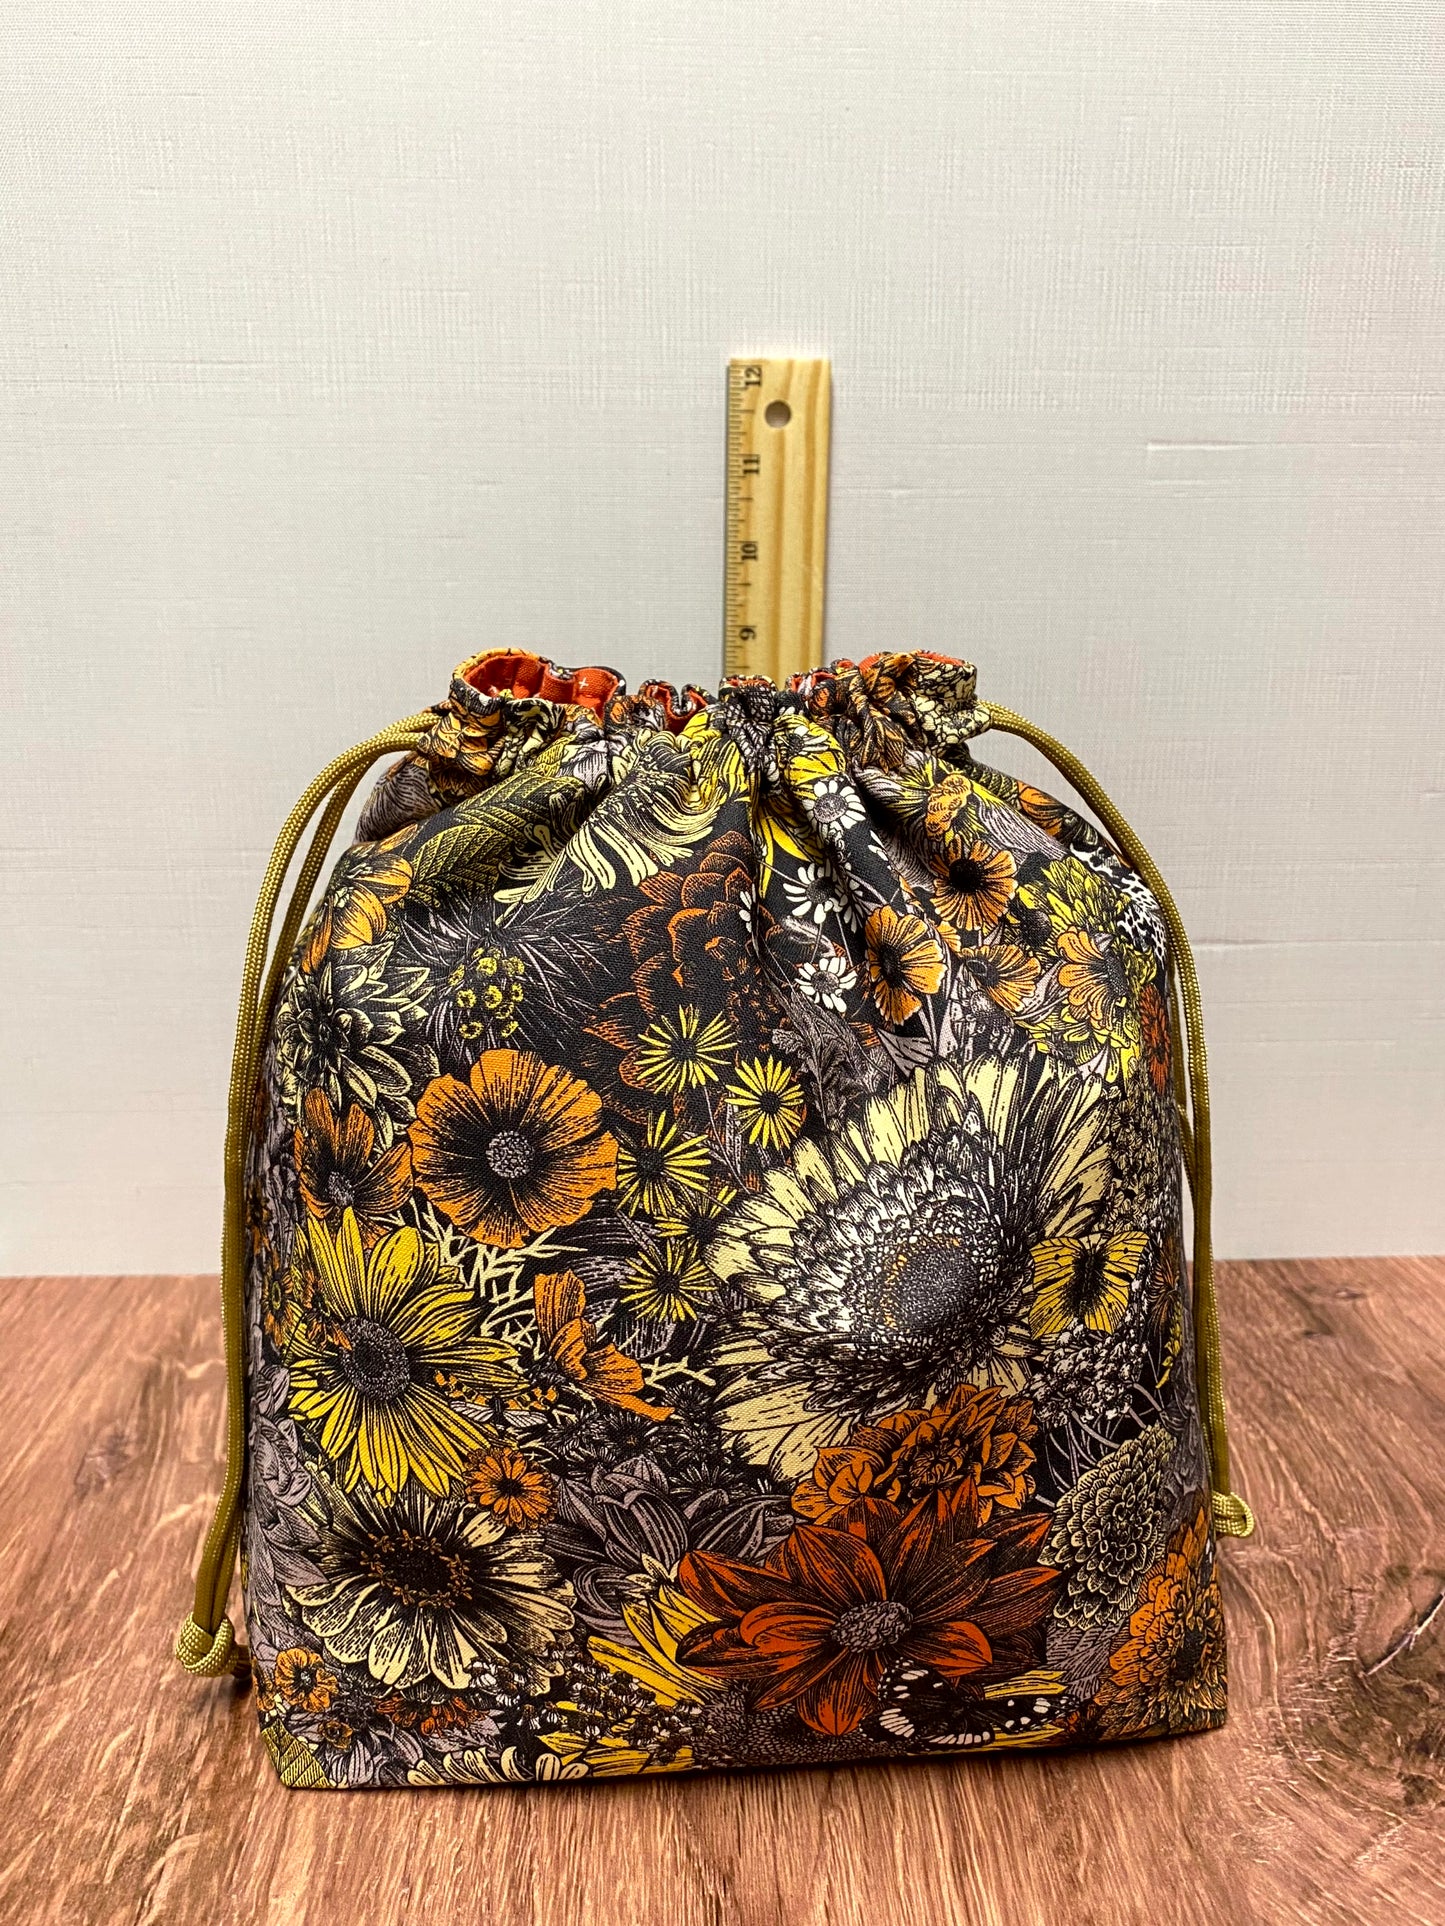 Sunflower Project Bag - Drawstring Bag – Knitting Bag – Crochet Bag - Toy Sack – Cross Stitch Bag - Flower - Floral